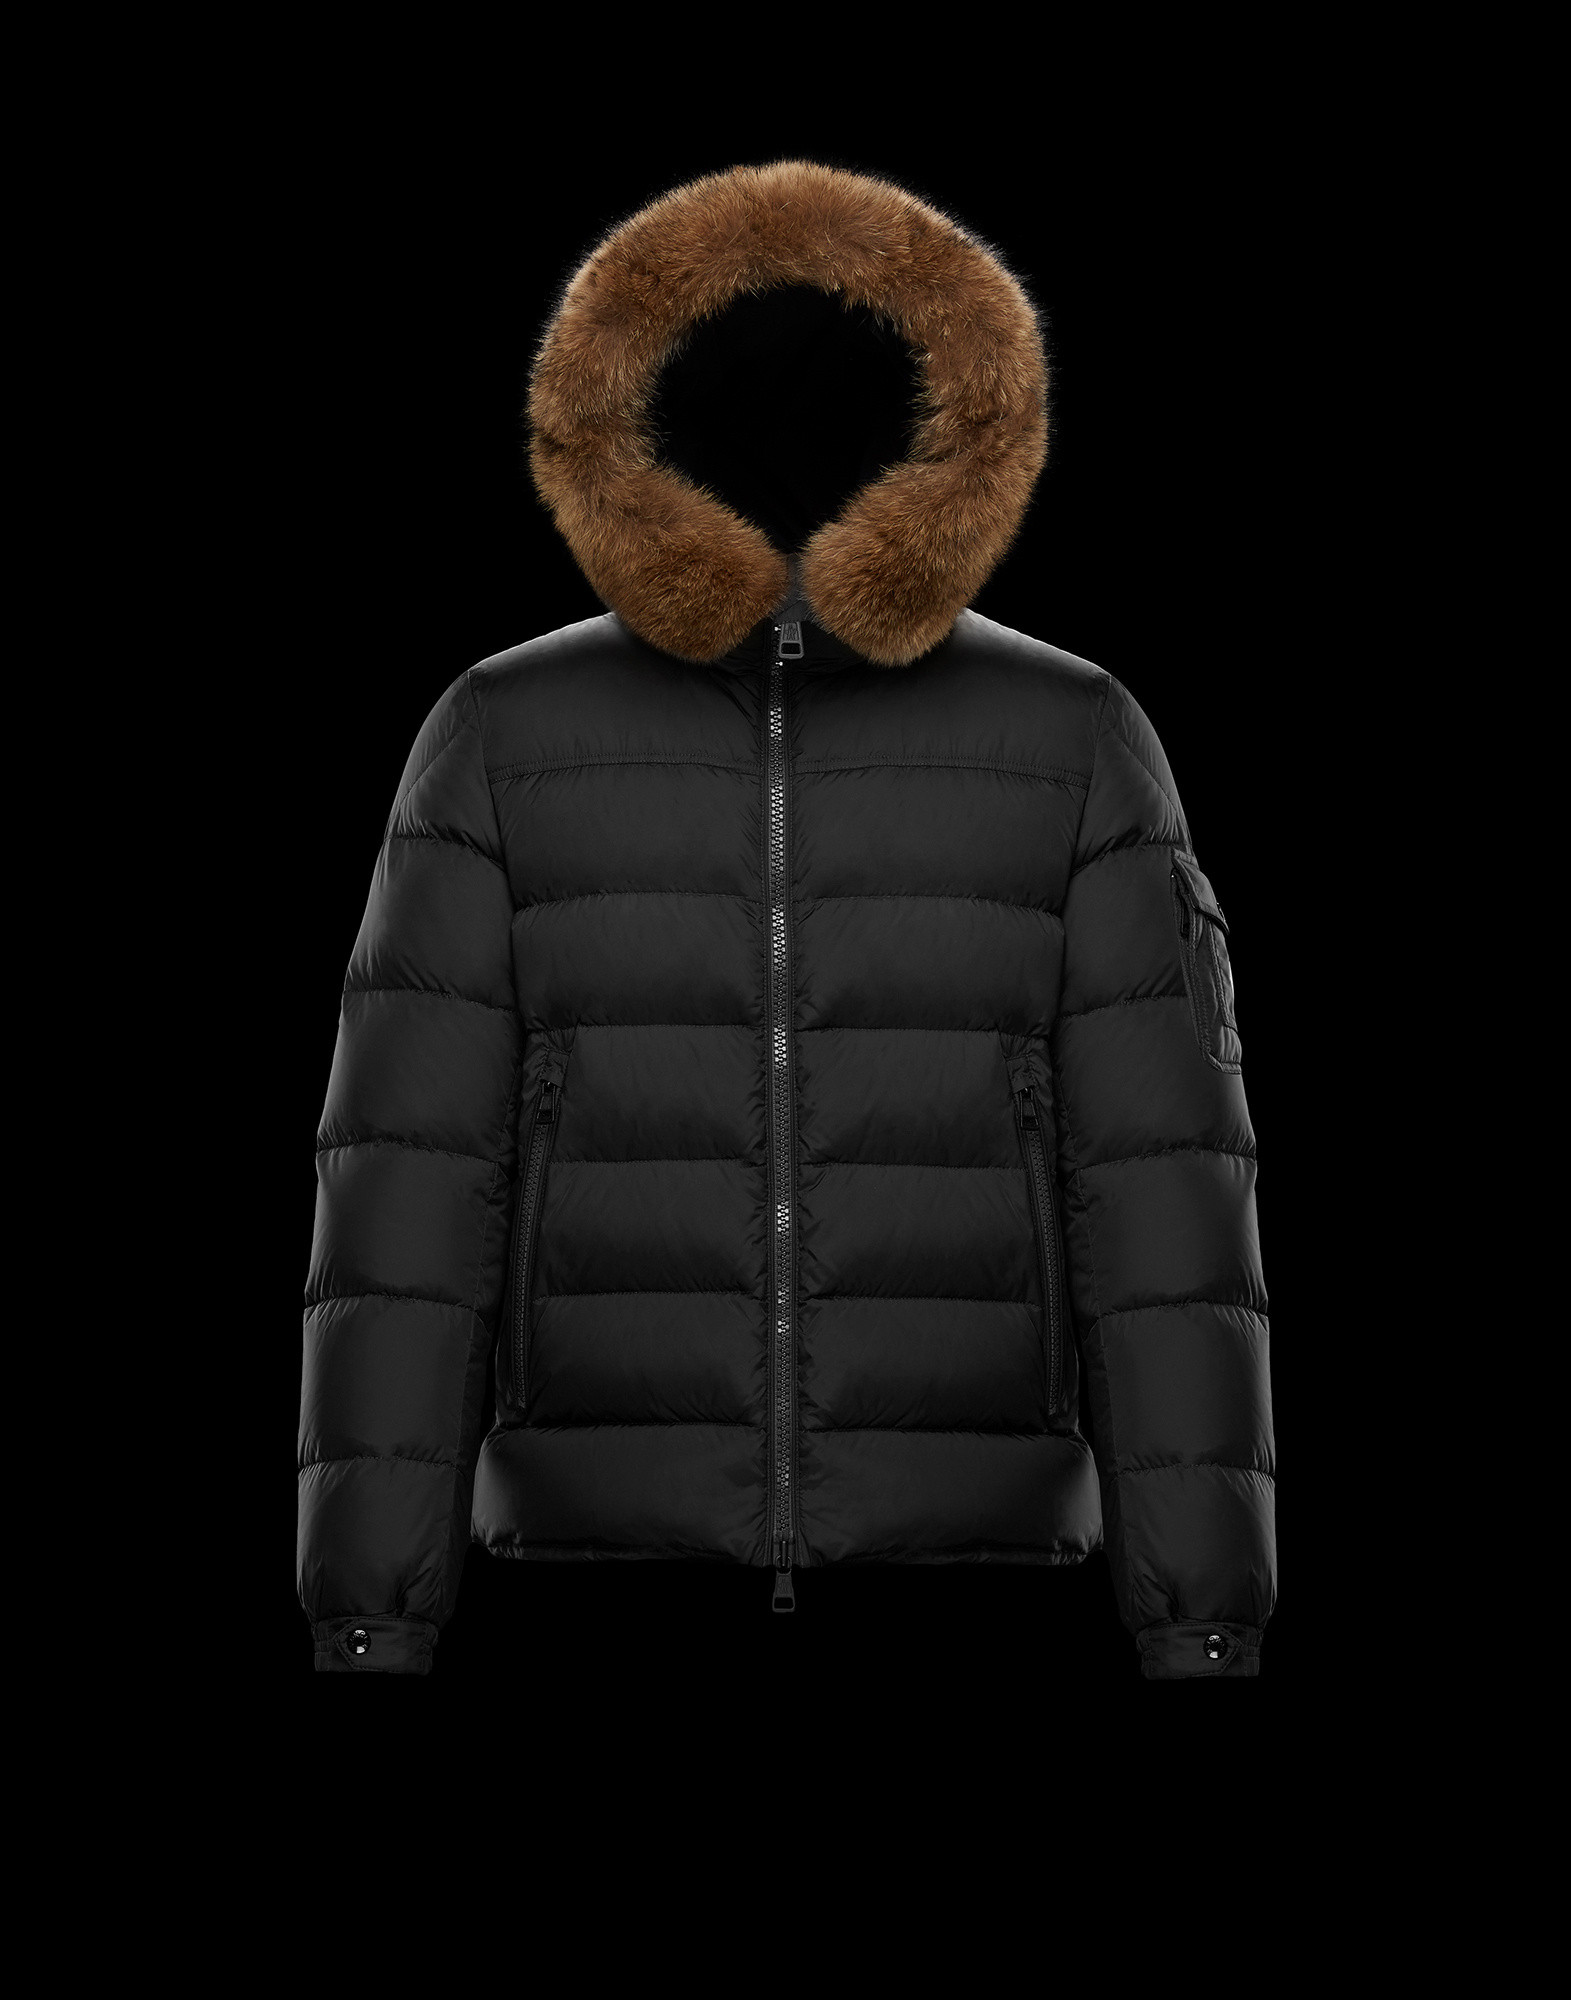 moncler vest with fur